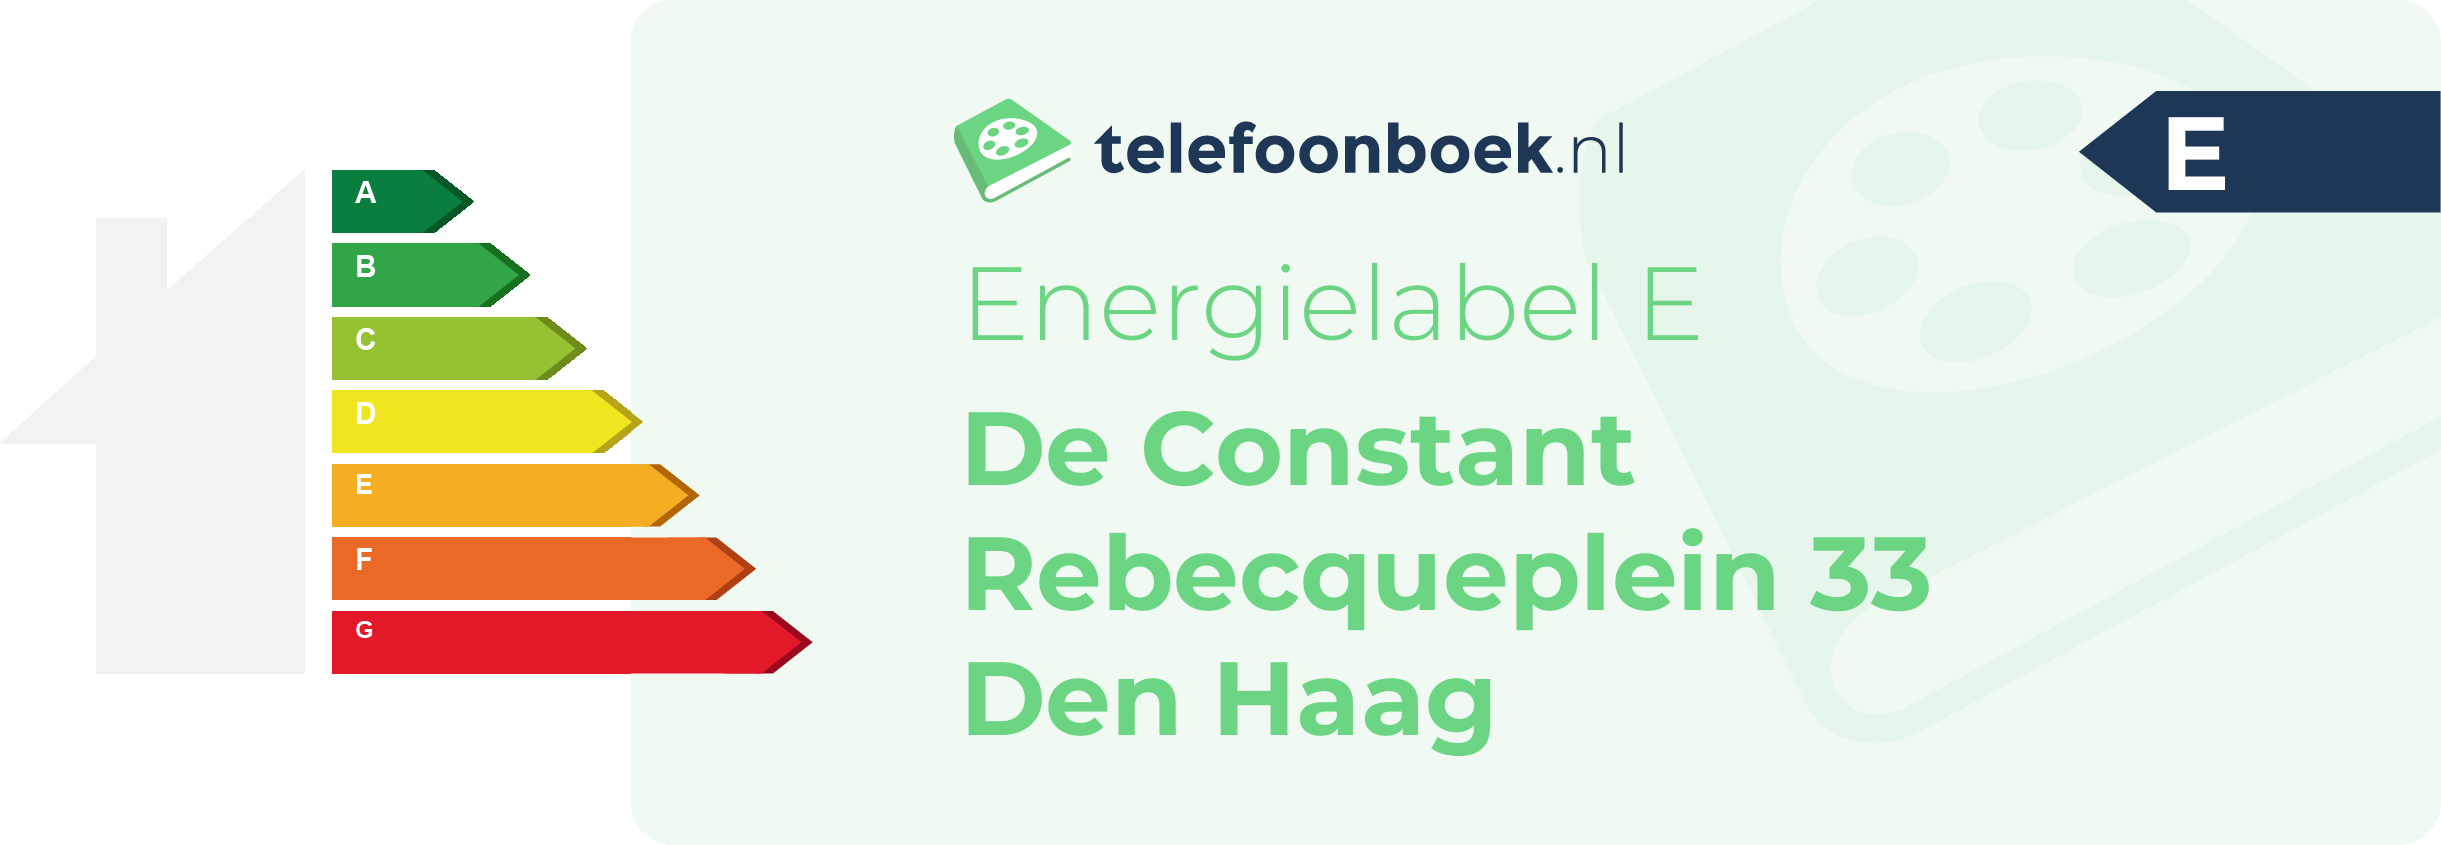 Energielabel De Constant Rebecqueplein 33 Den Haag